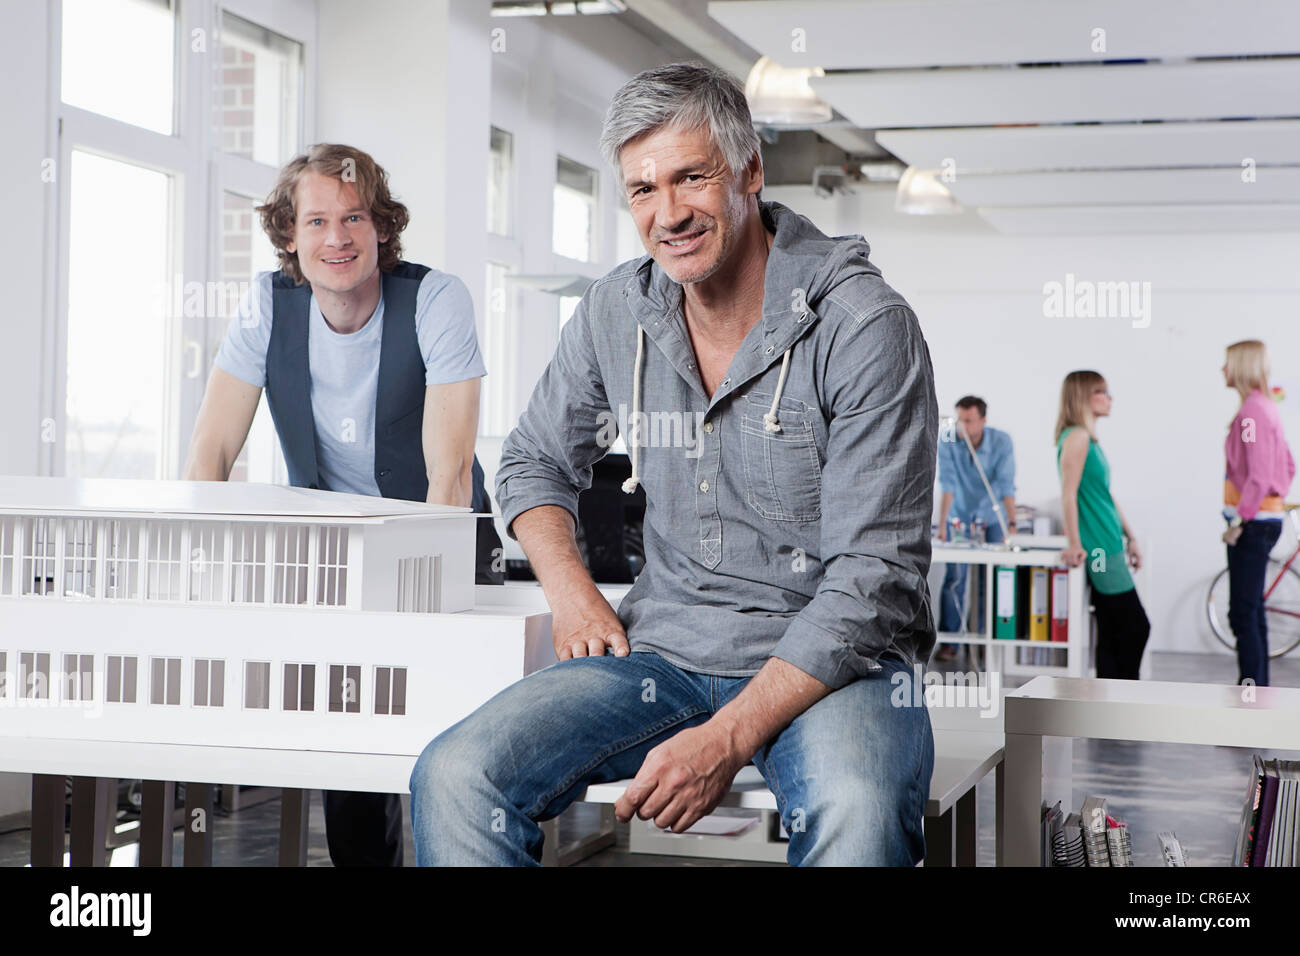 Deutschland, Bayern, München, Männer mit Architekturmodell in Büro, Kollegen reden im Hintergrund Stockfoto